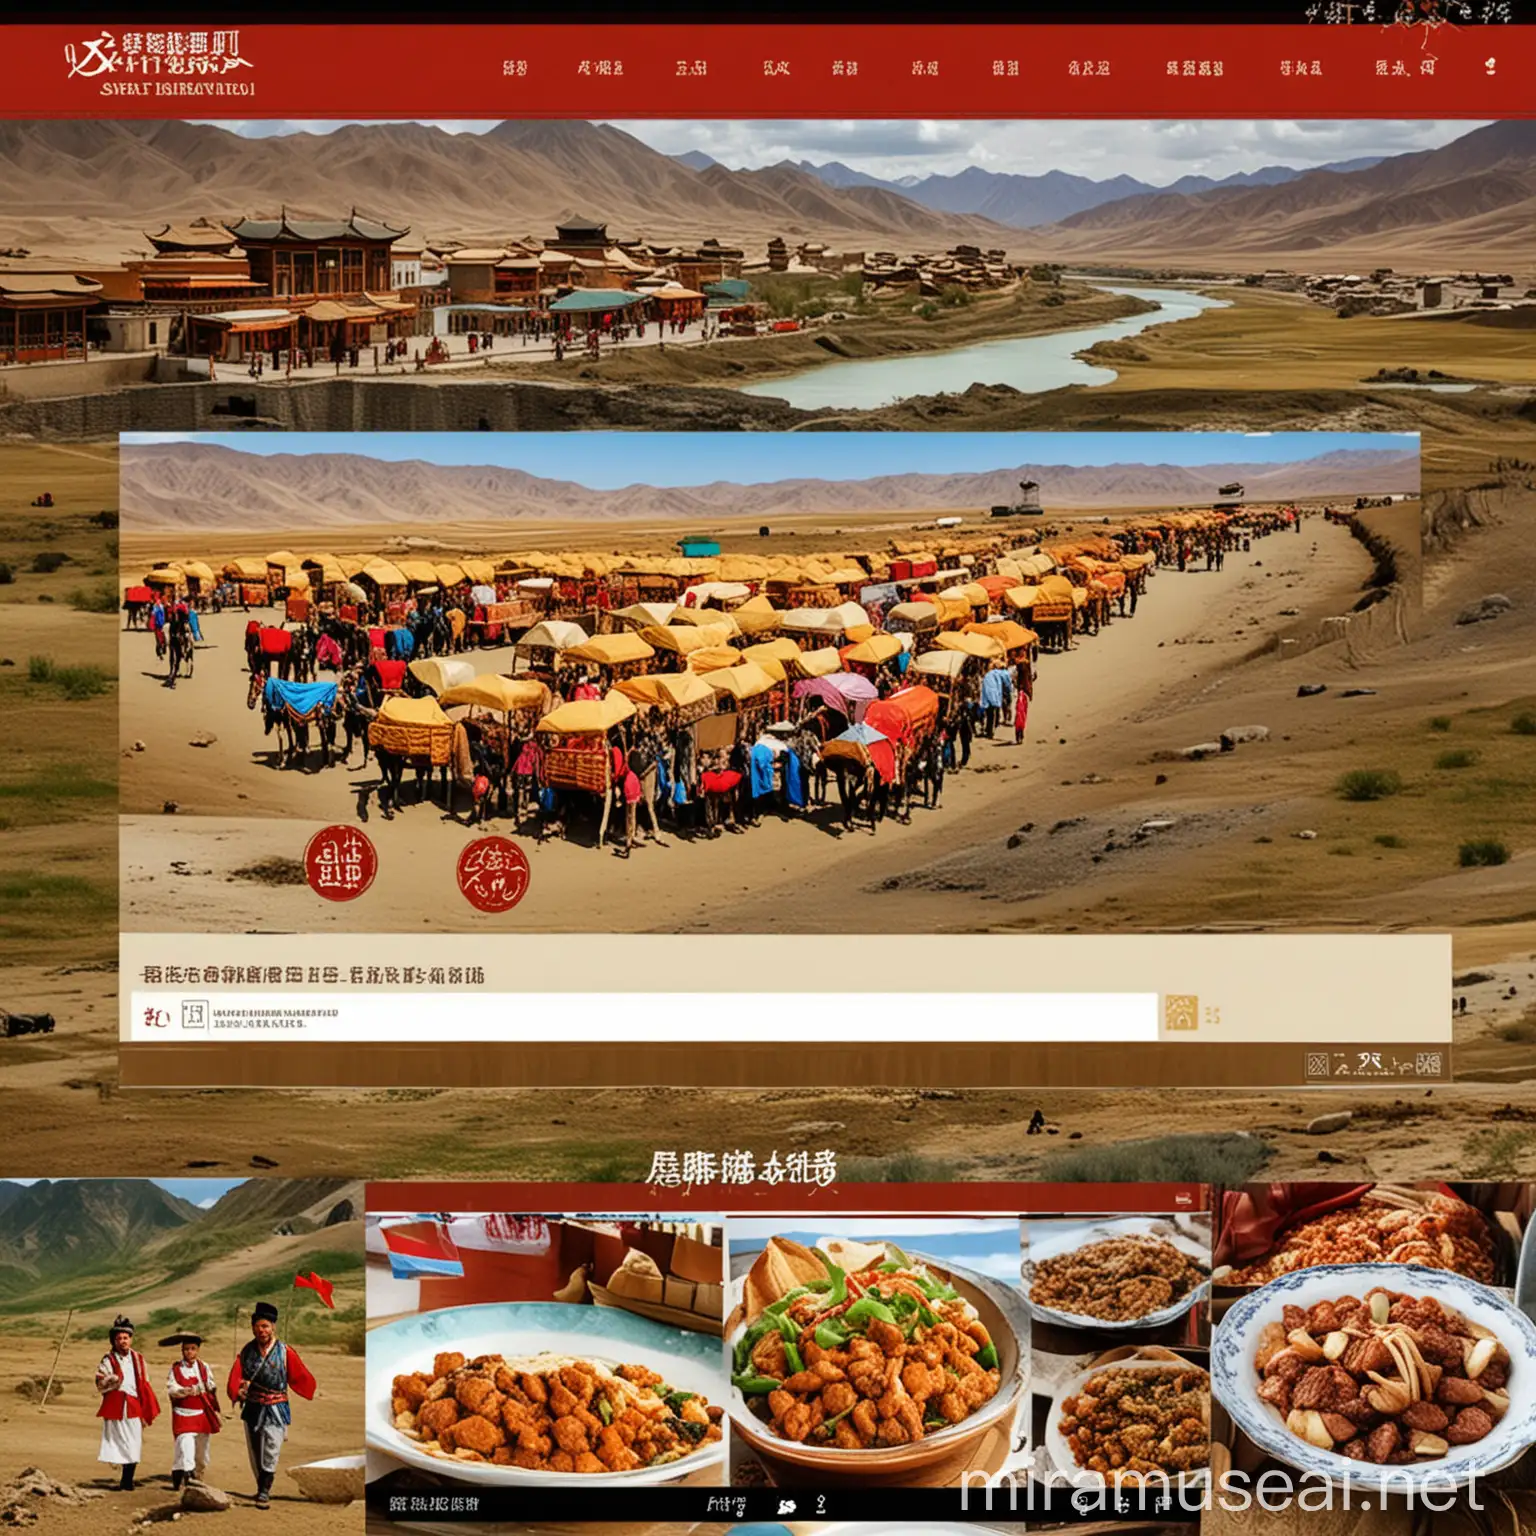 设计一个新疆旅游网页，有导航，有焦点图，有导航，导航文字为，网站首页，新疆美食，新疆美景，联系我们，首页板块是导航上的，设计风格符合新疆特色